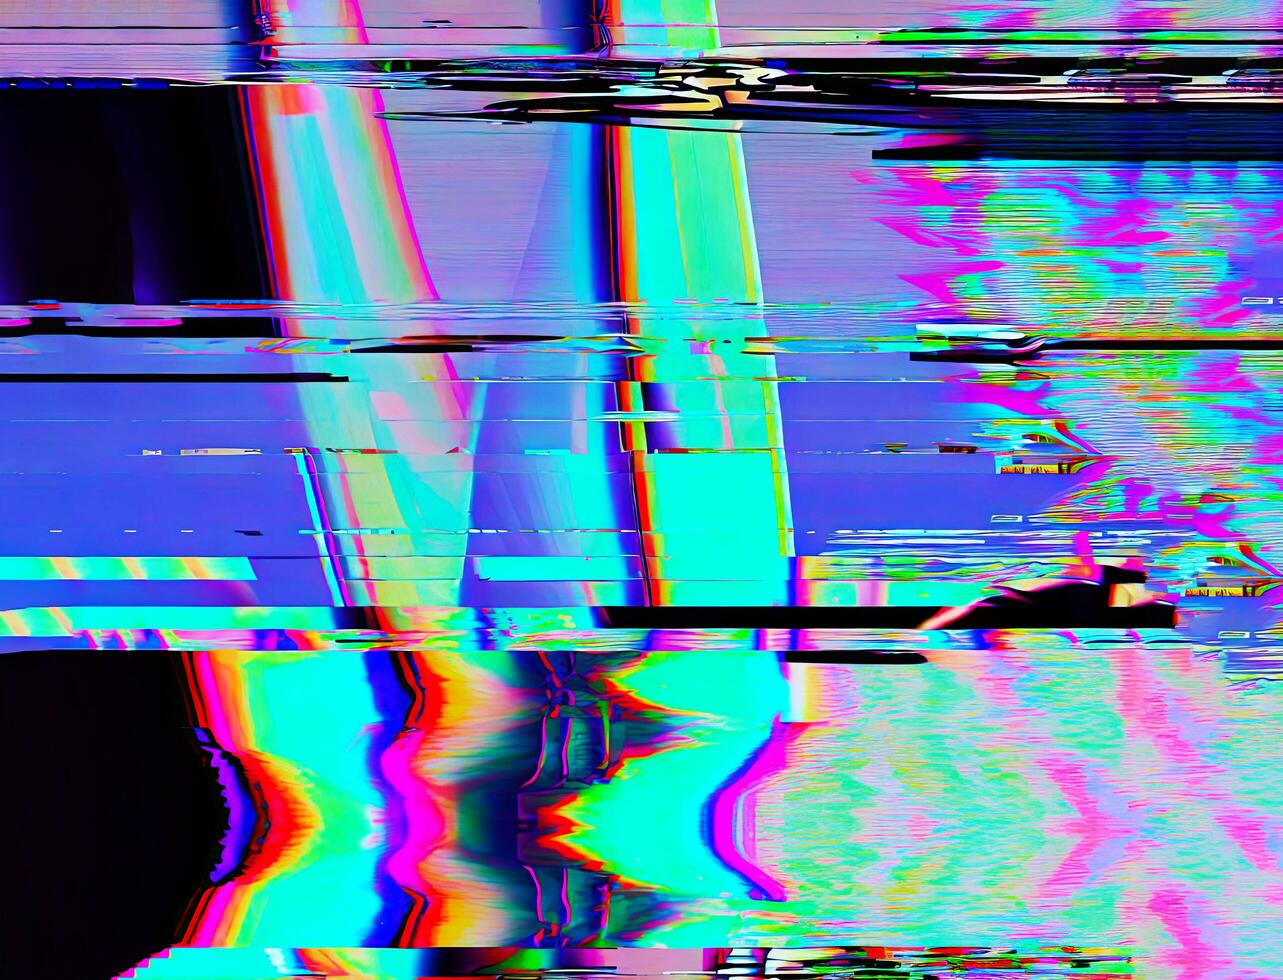 digitaal vervorming abstract blauw, munt, en roze achtergrond met doorweven glitch effect. futuristische cyberpunk ontwerp met retro-futuristisch, webpunk, en neon esthetiek. foto